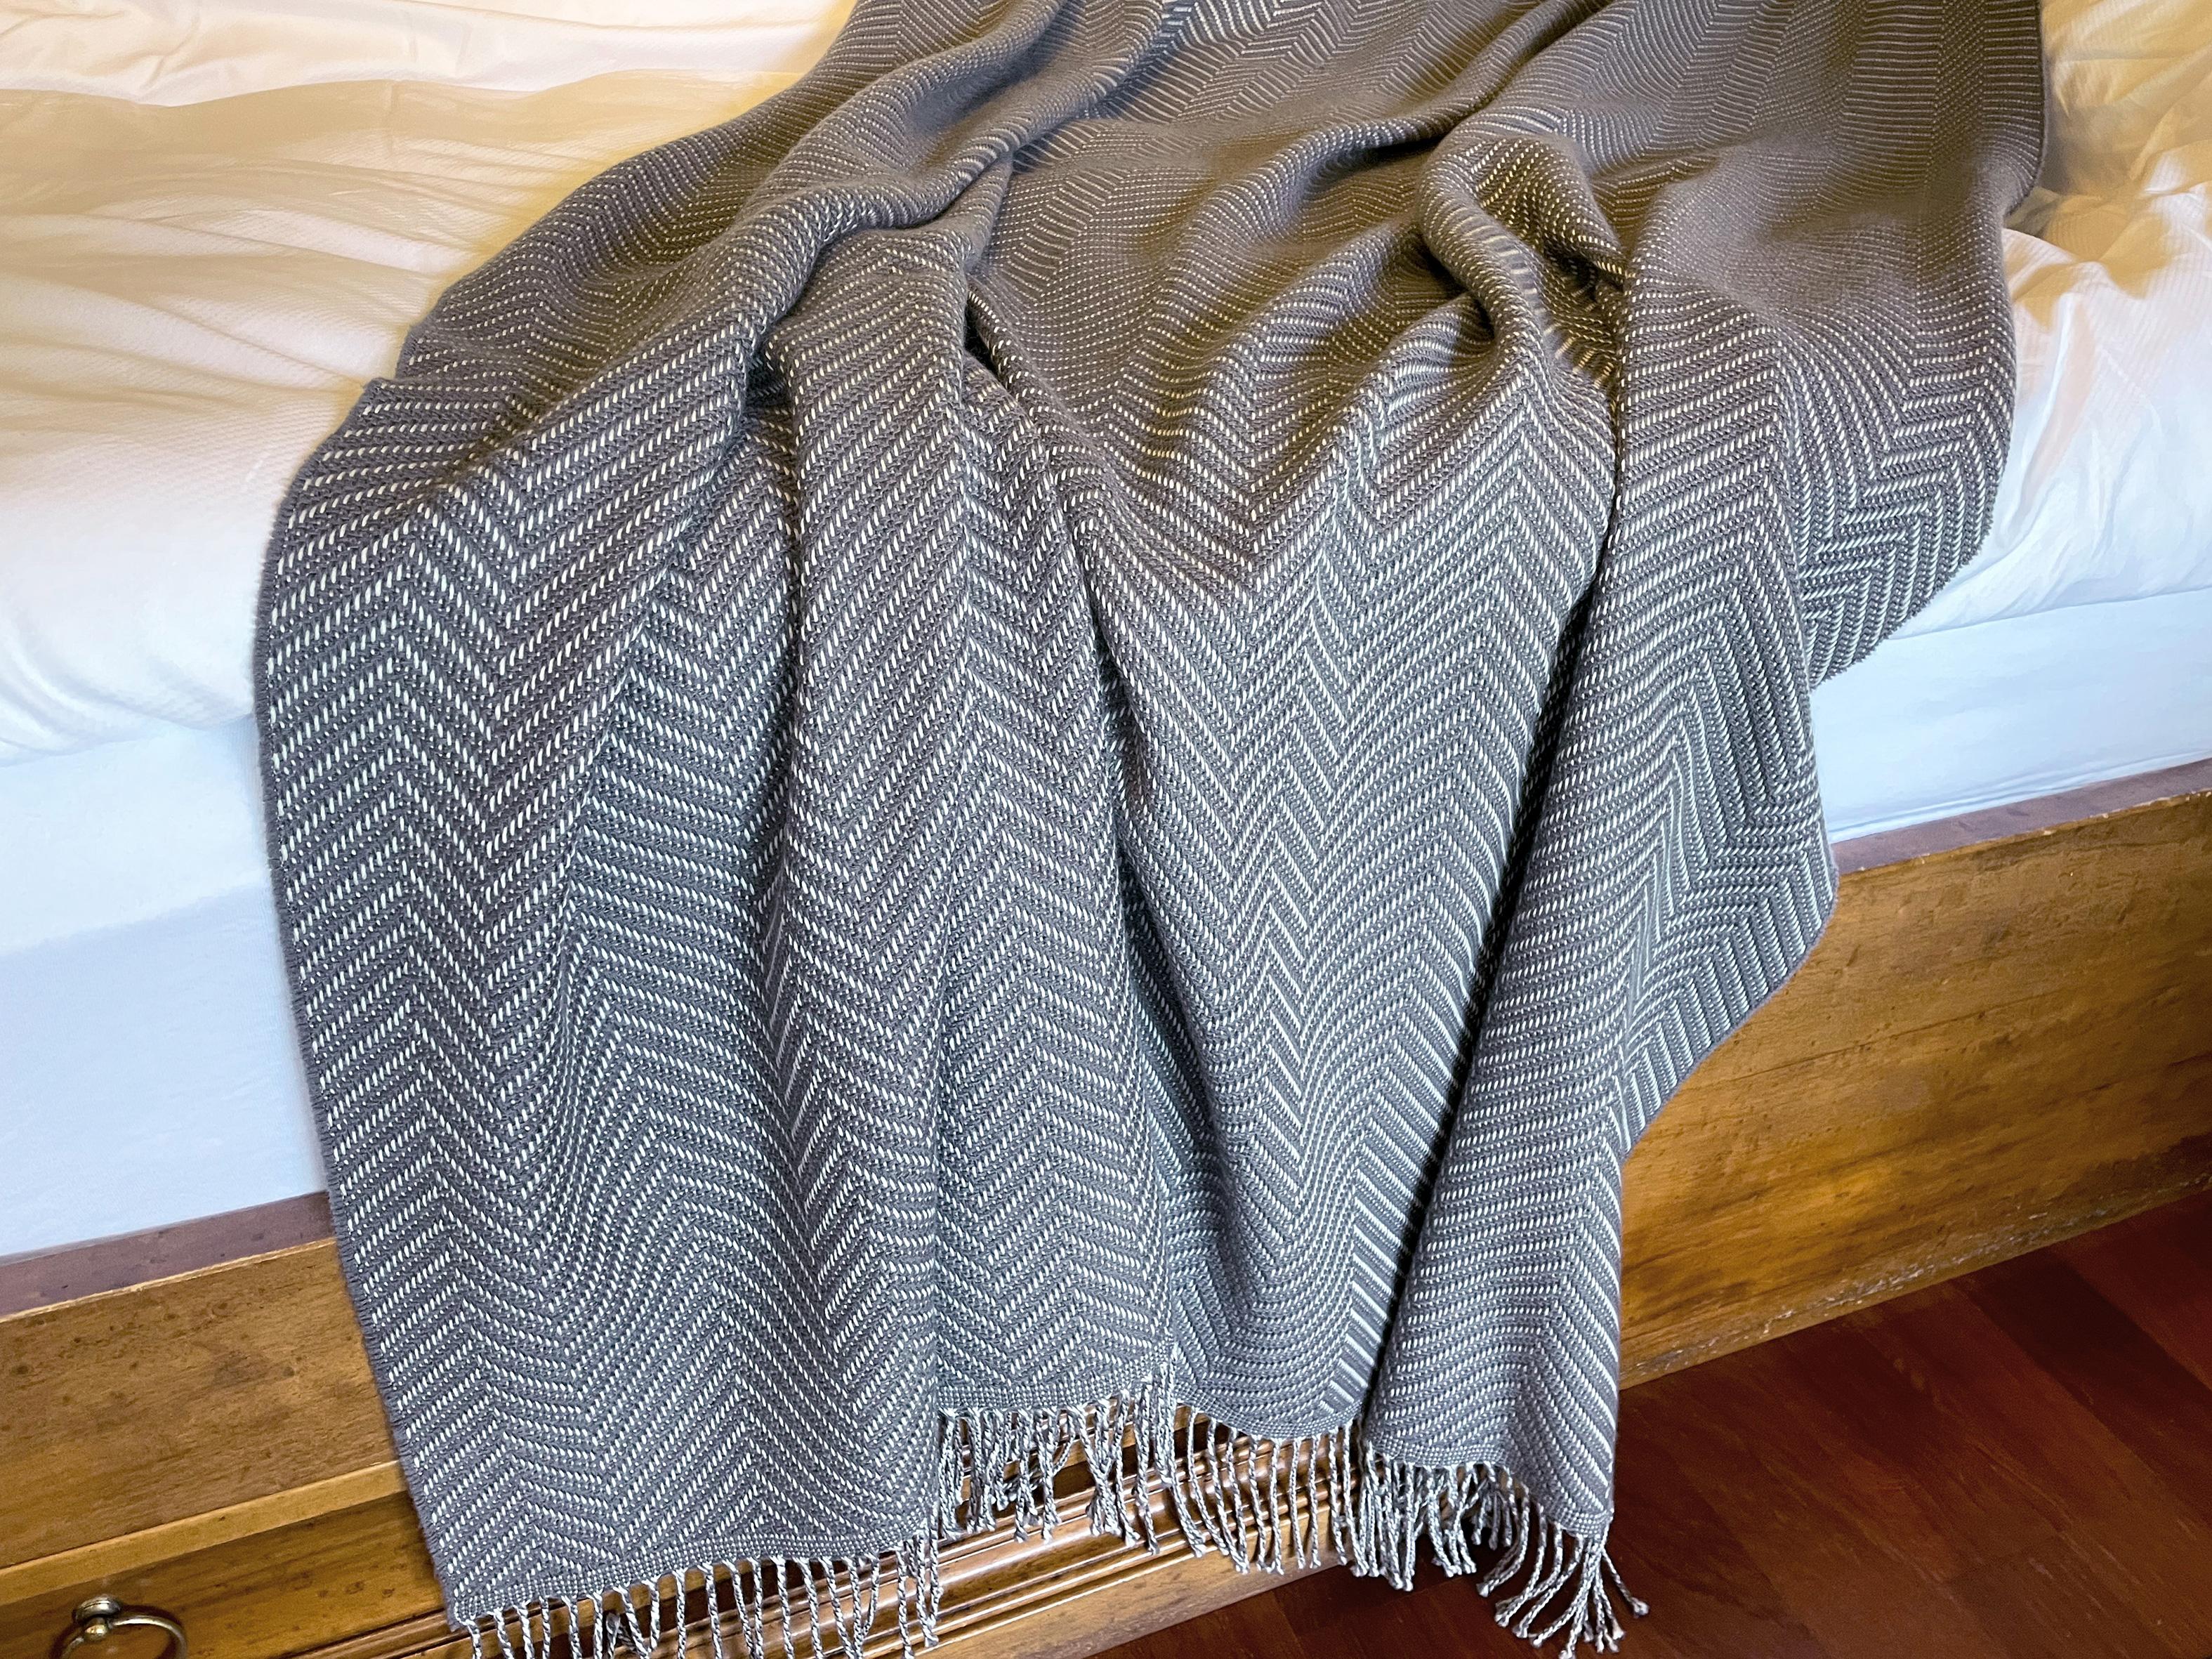 Entworfen in Berlin von Catharina Mende, gewebt aus 100% extrafeiner Merino in Schottland: Dieser exquisite Bettüberwurf in der Farbe Grau, gewebt in Schottland aus feinster extrafeiner Merino, ist ein Stück Schönheit und Eleganz für jedes